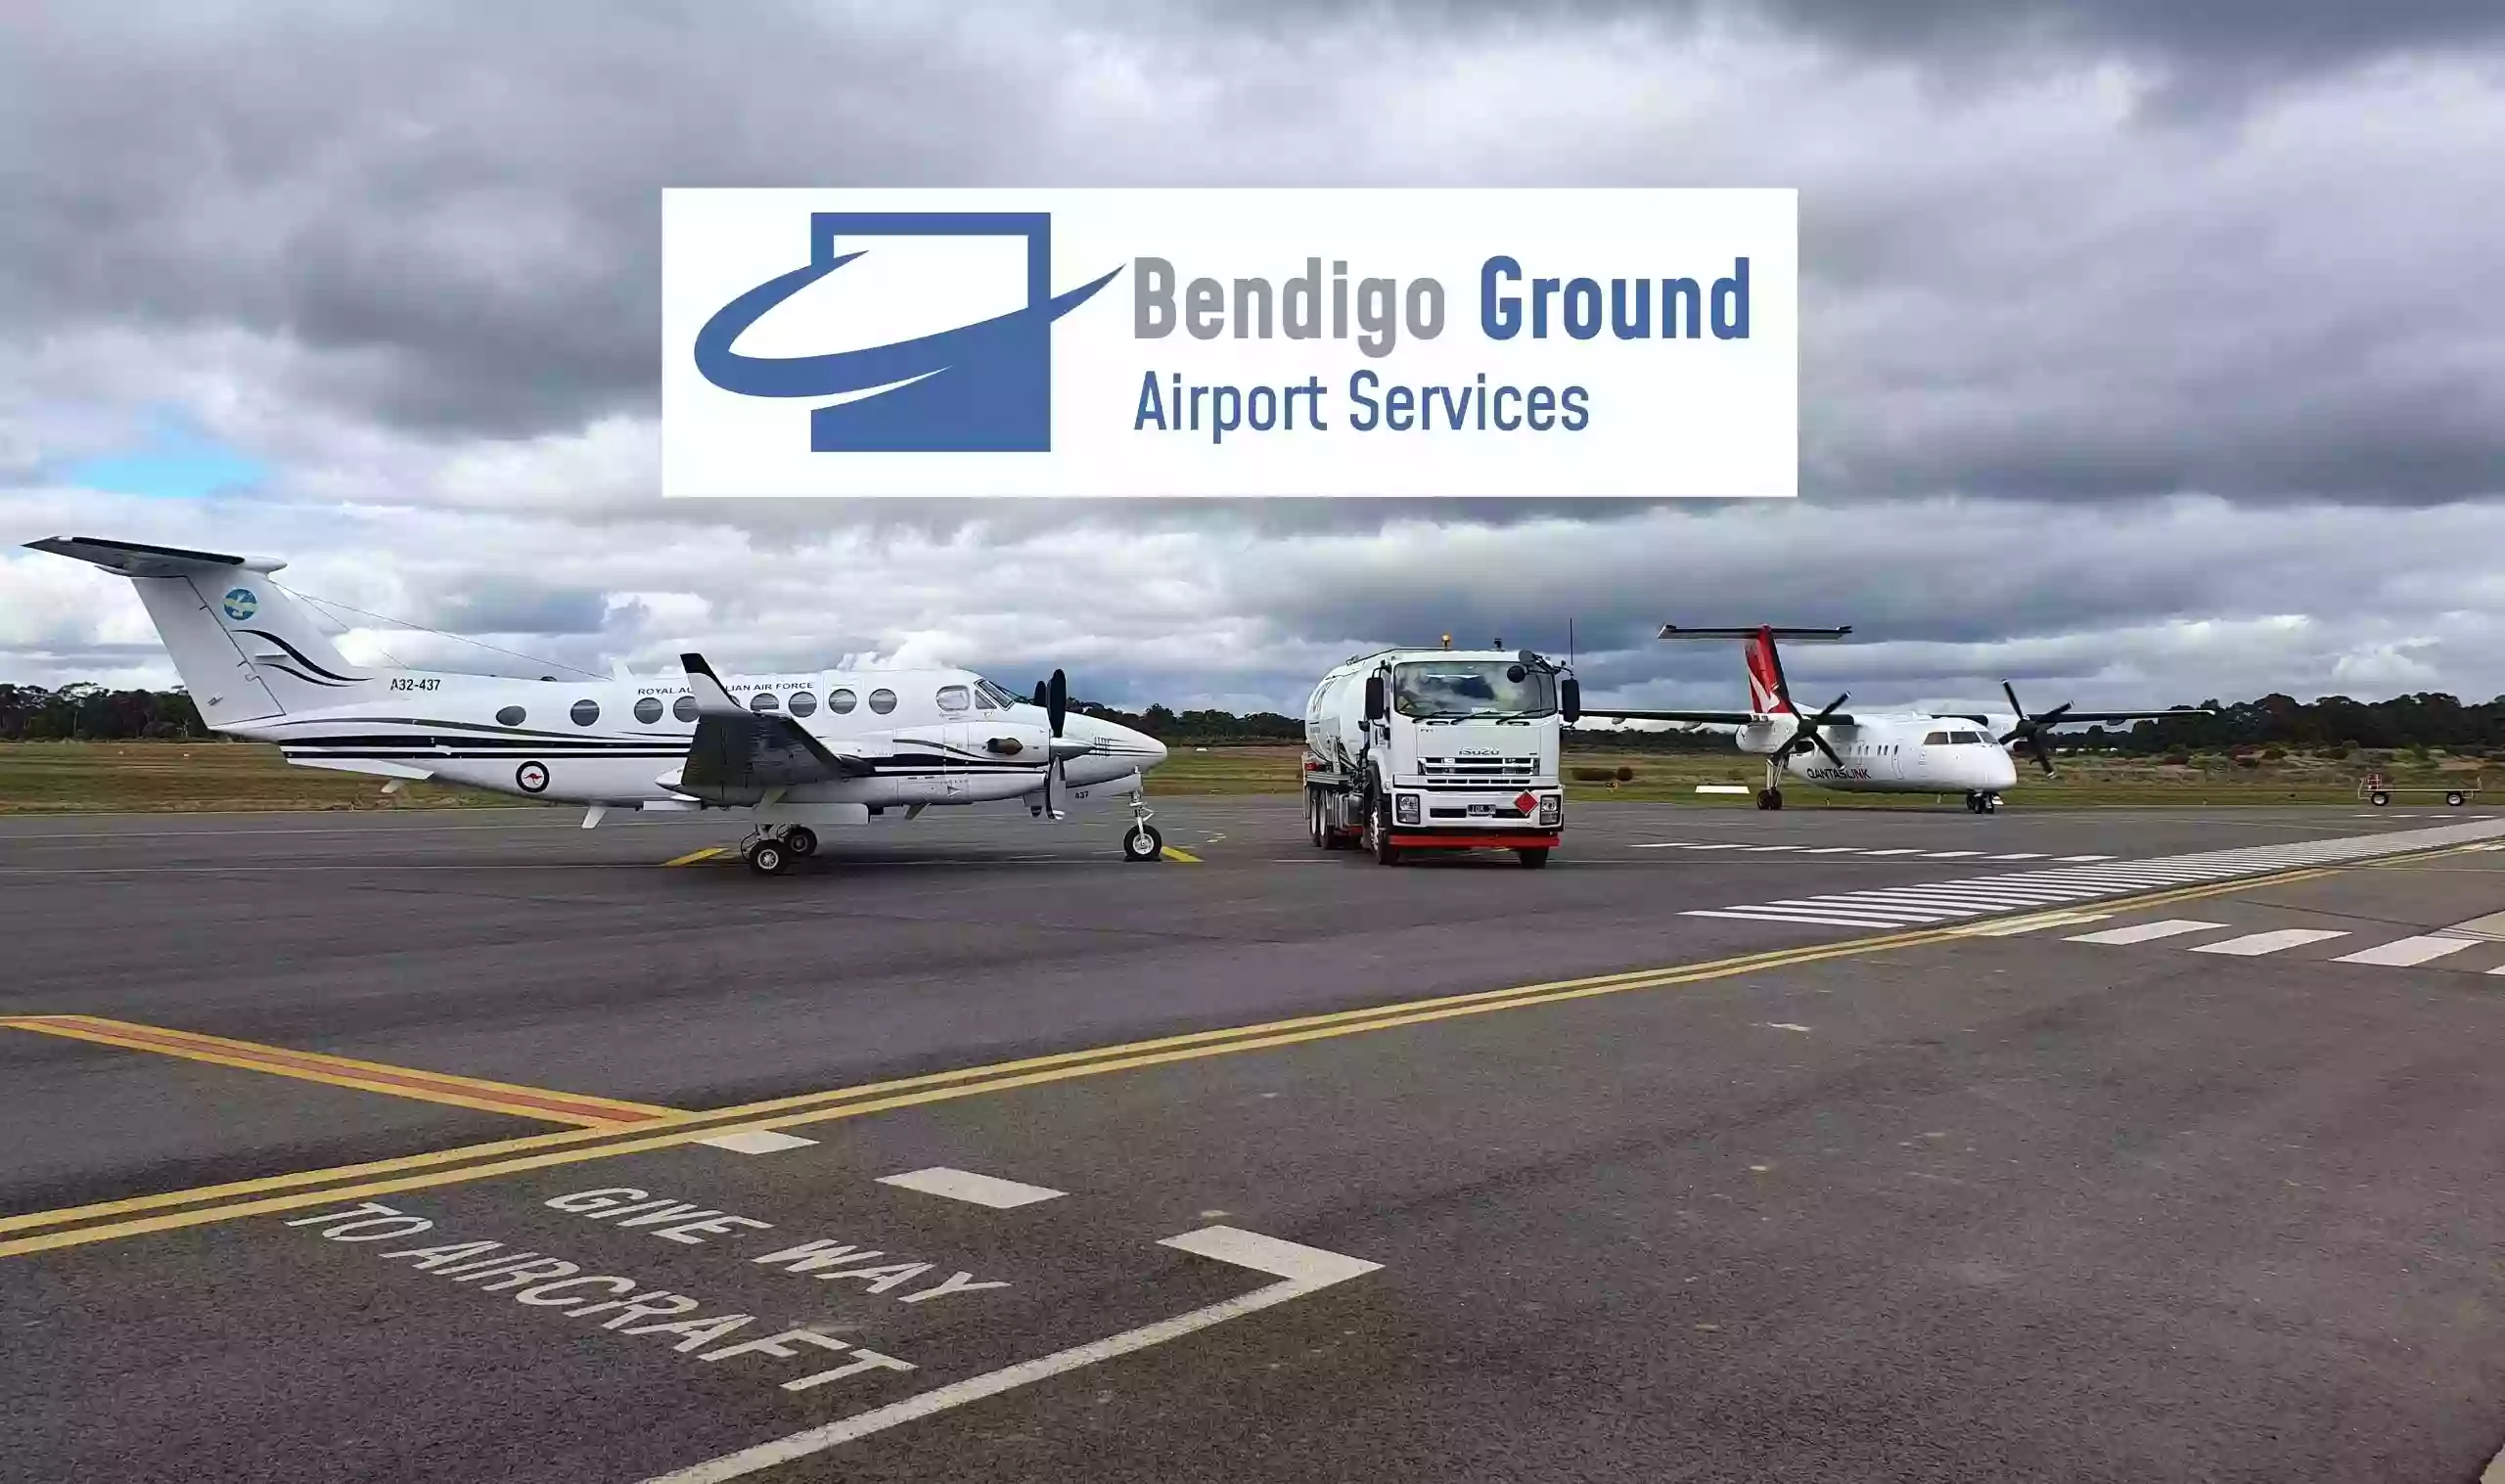 Bendigo Ground Airport Services